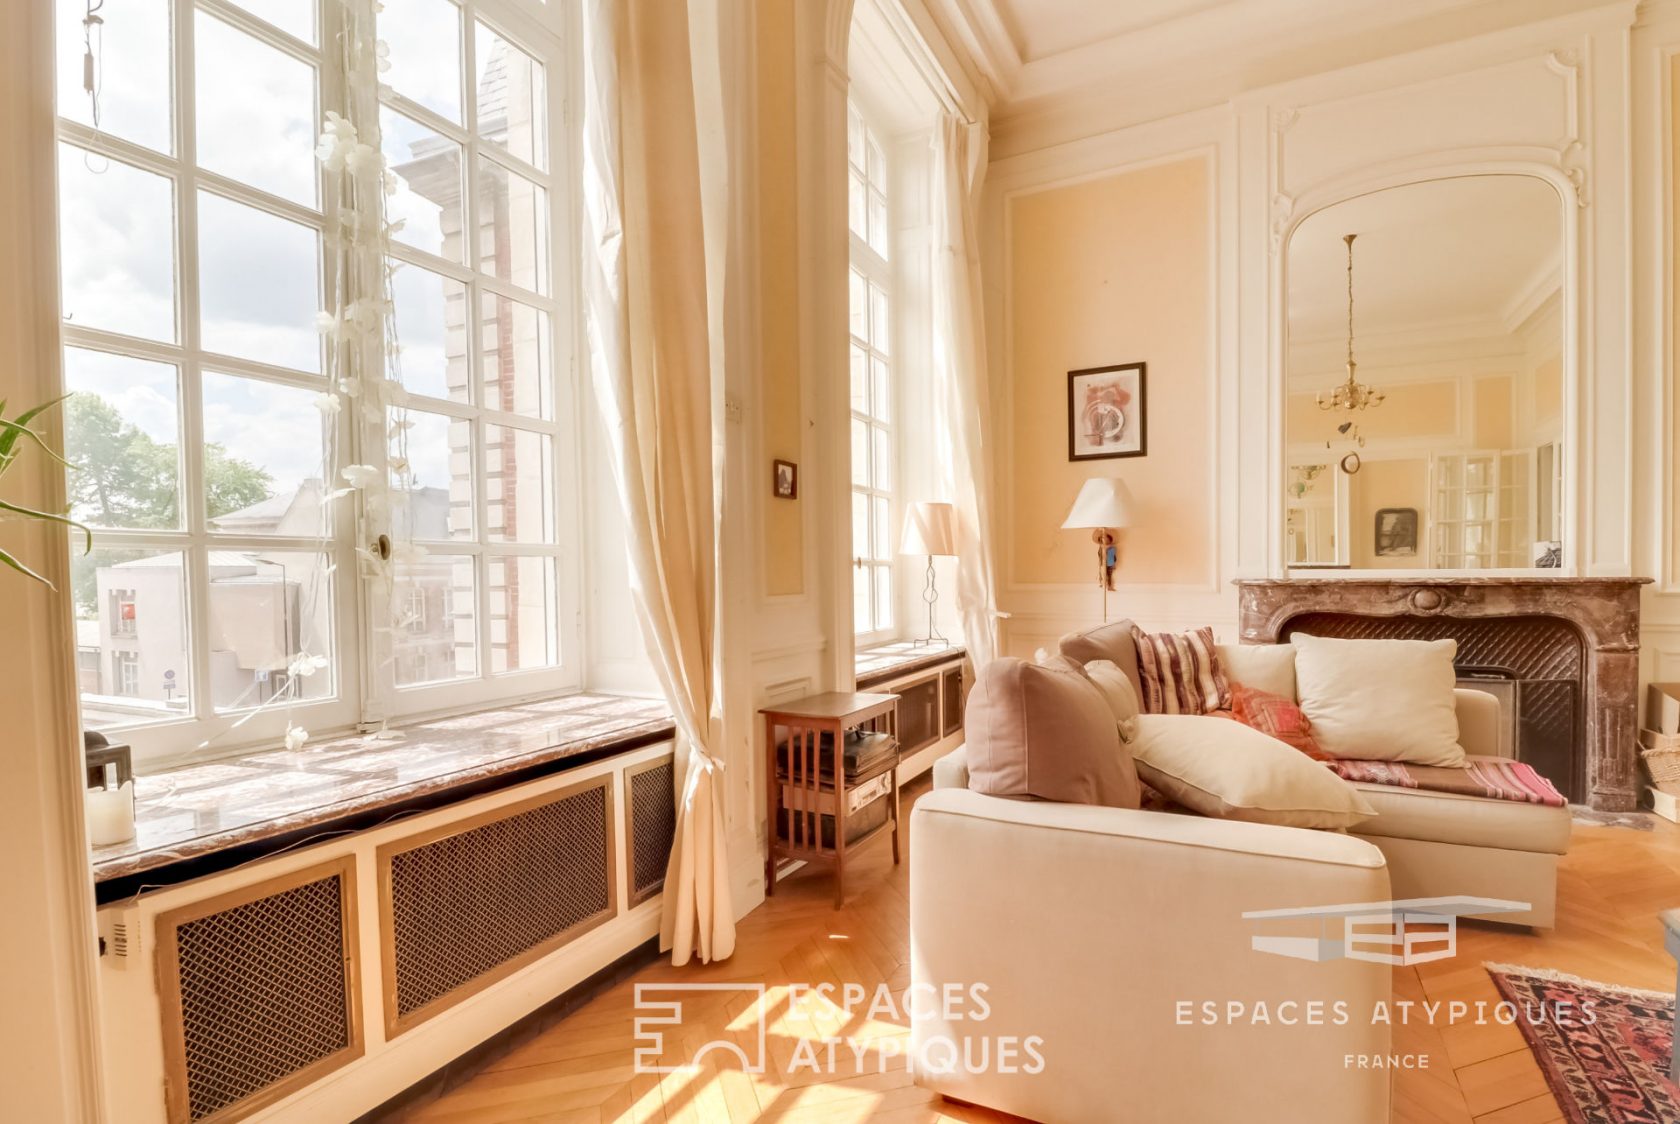 Le Sompteux – Apartment Hausmannien type in a prestigious place